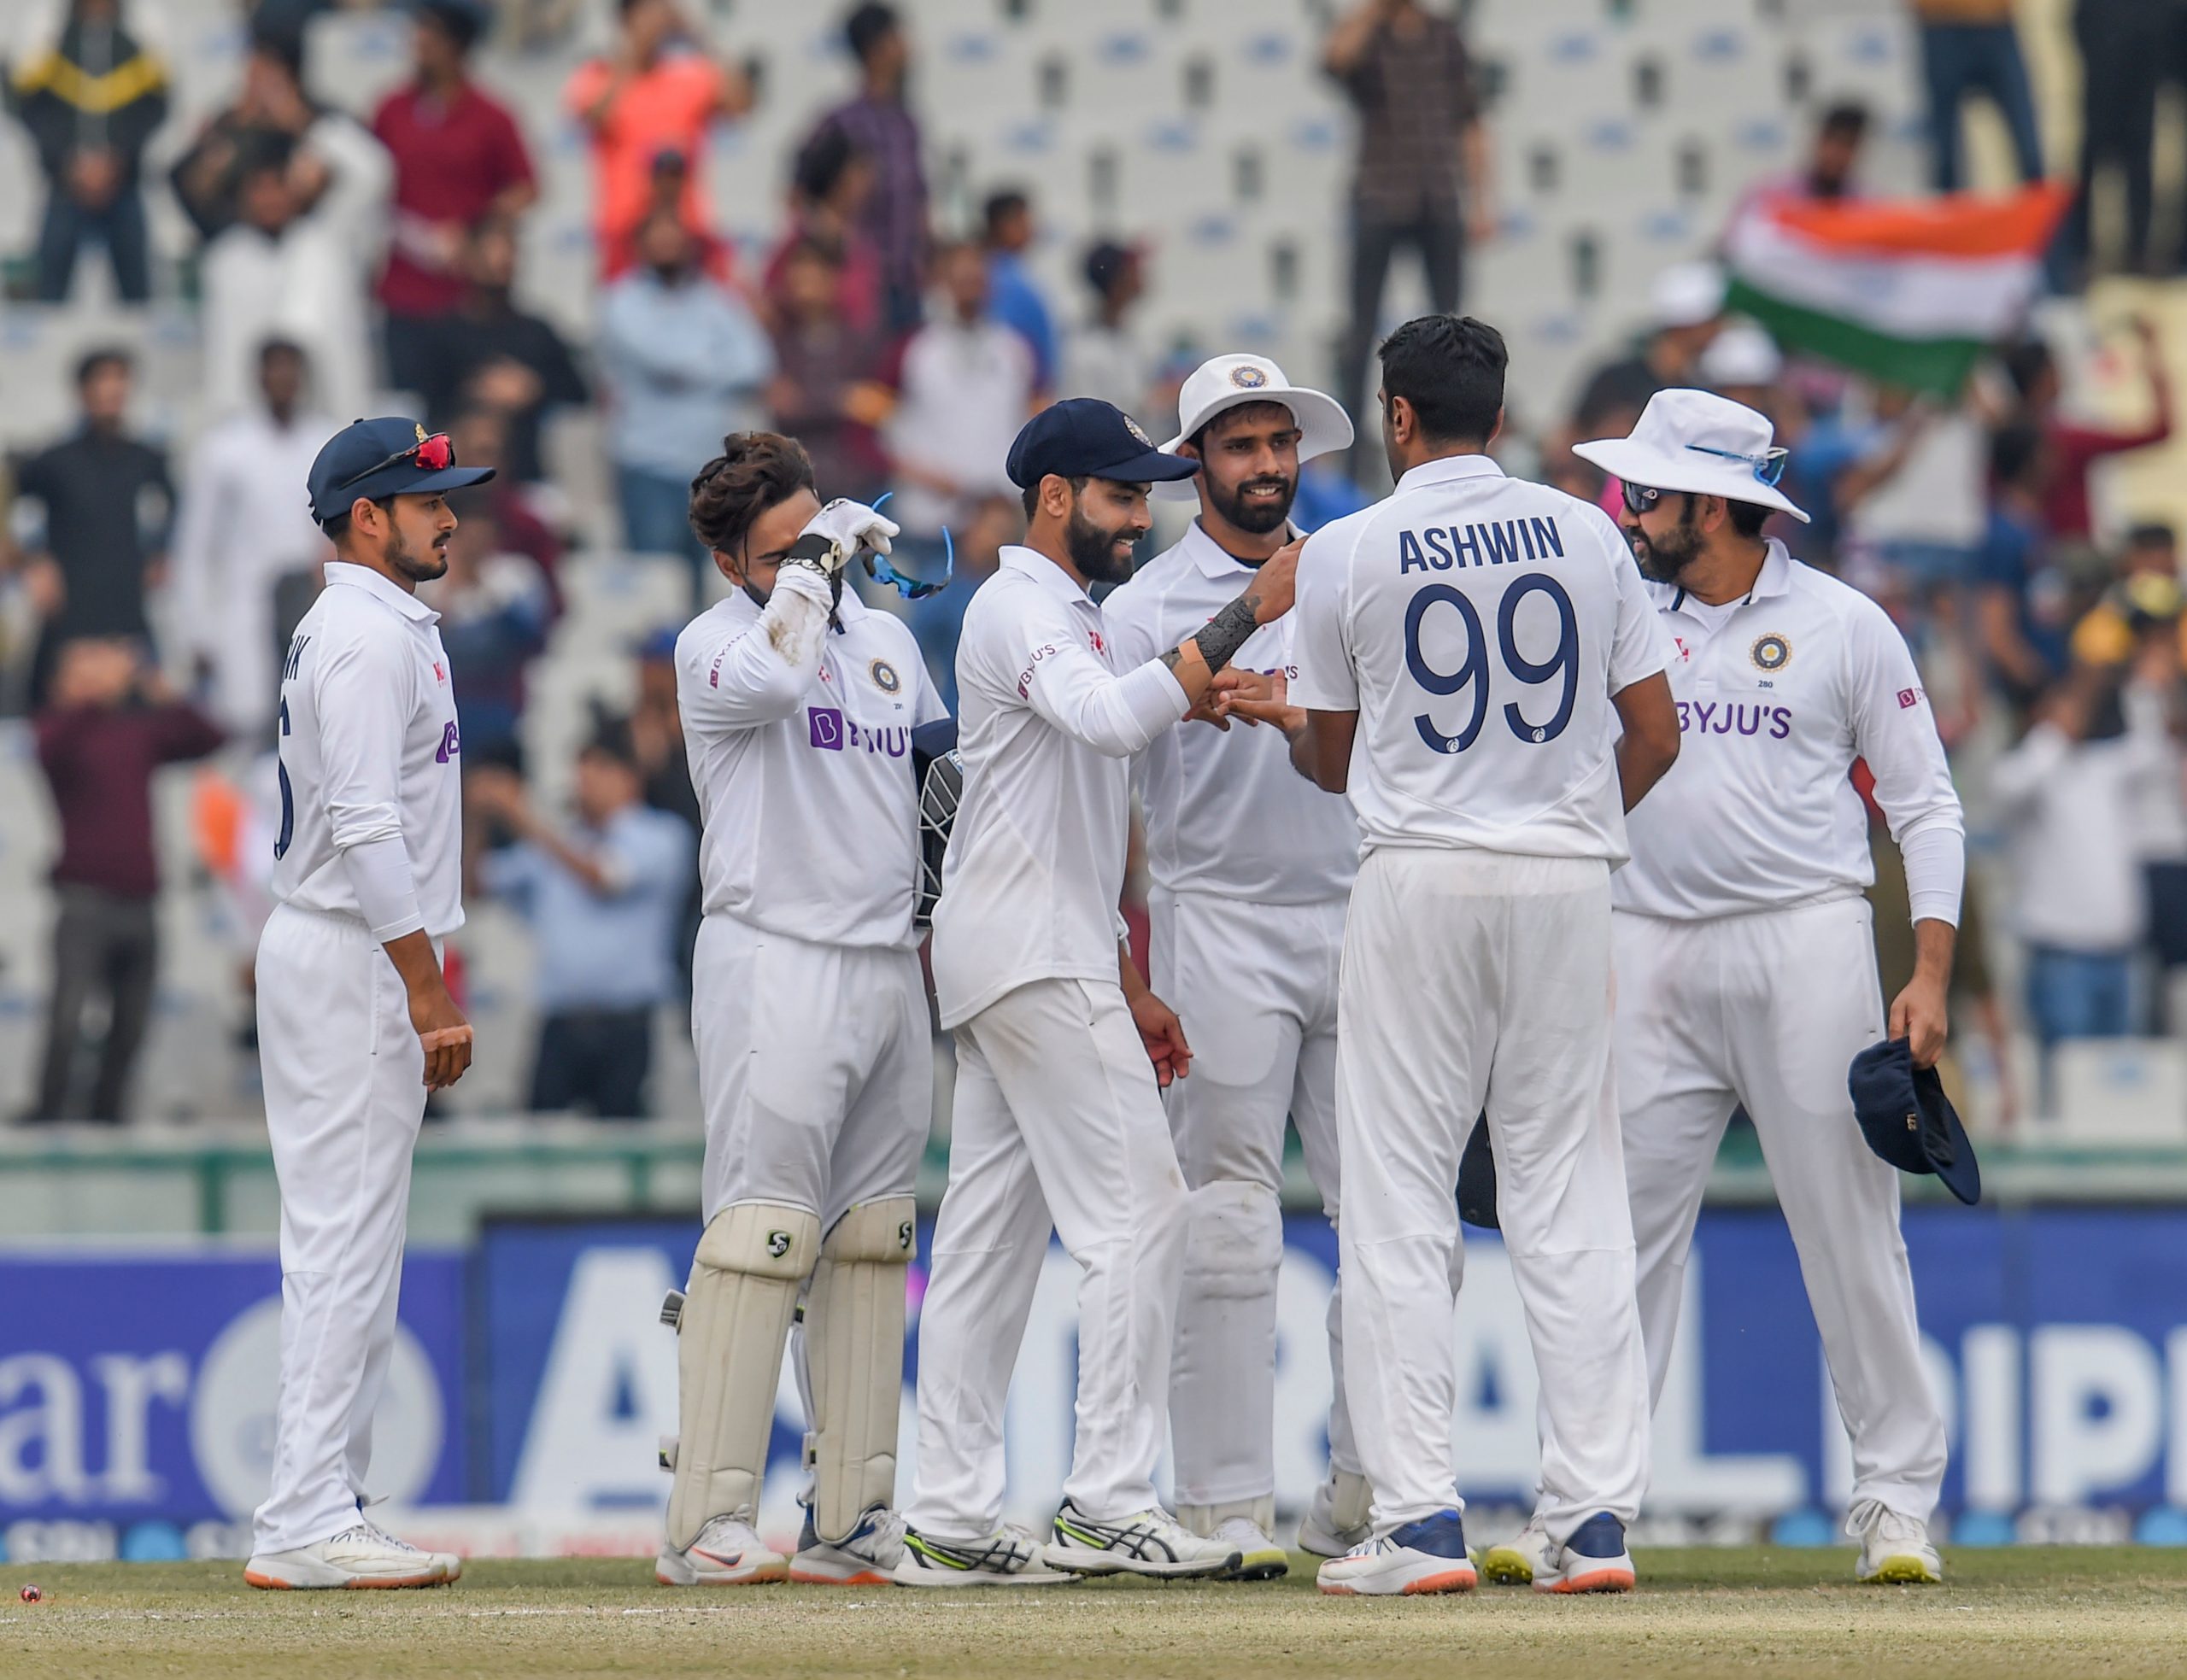 टीम इंडिया के लिए आसान हुआ पिंक बॉल टेस्ट, और मुश्किल में फंसी श्रीलंका